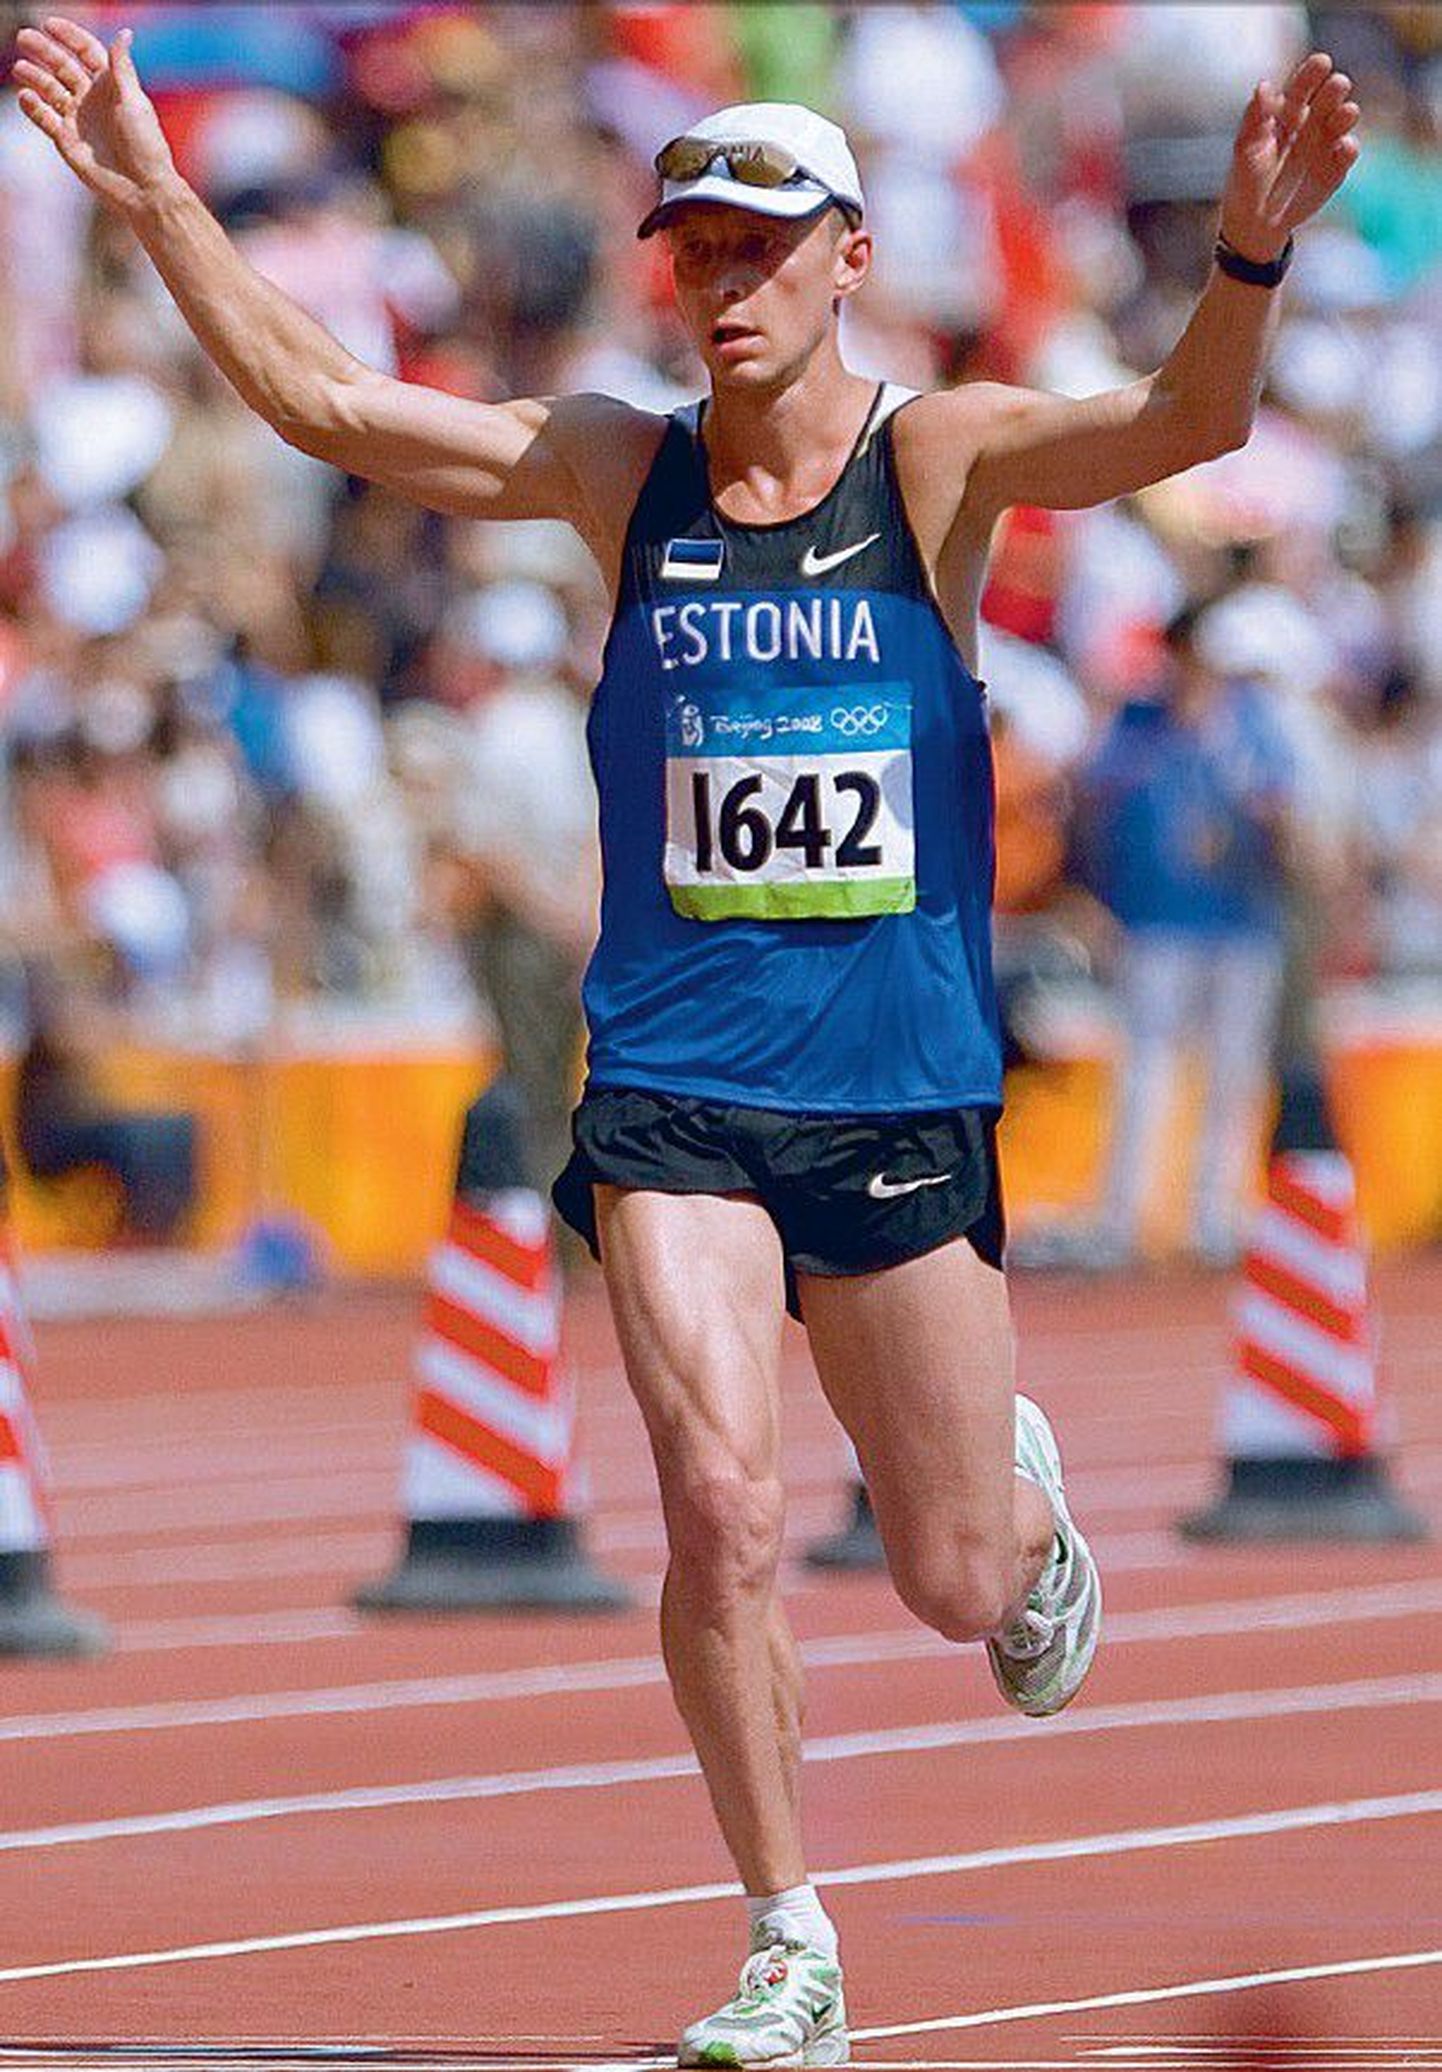 Павел Лоскутов - серебряный призер чемпионата Европы по легкой атлетике 2002 года, многократный чемпион Эстонии в беге на 5 и 10 км.